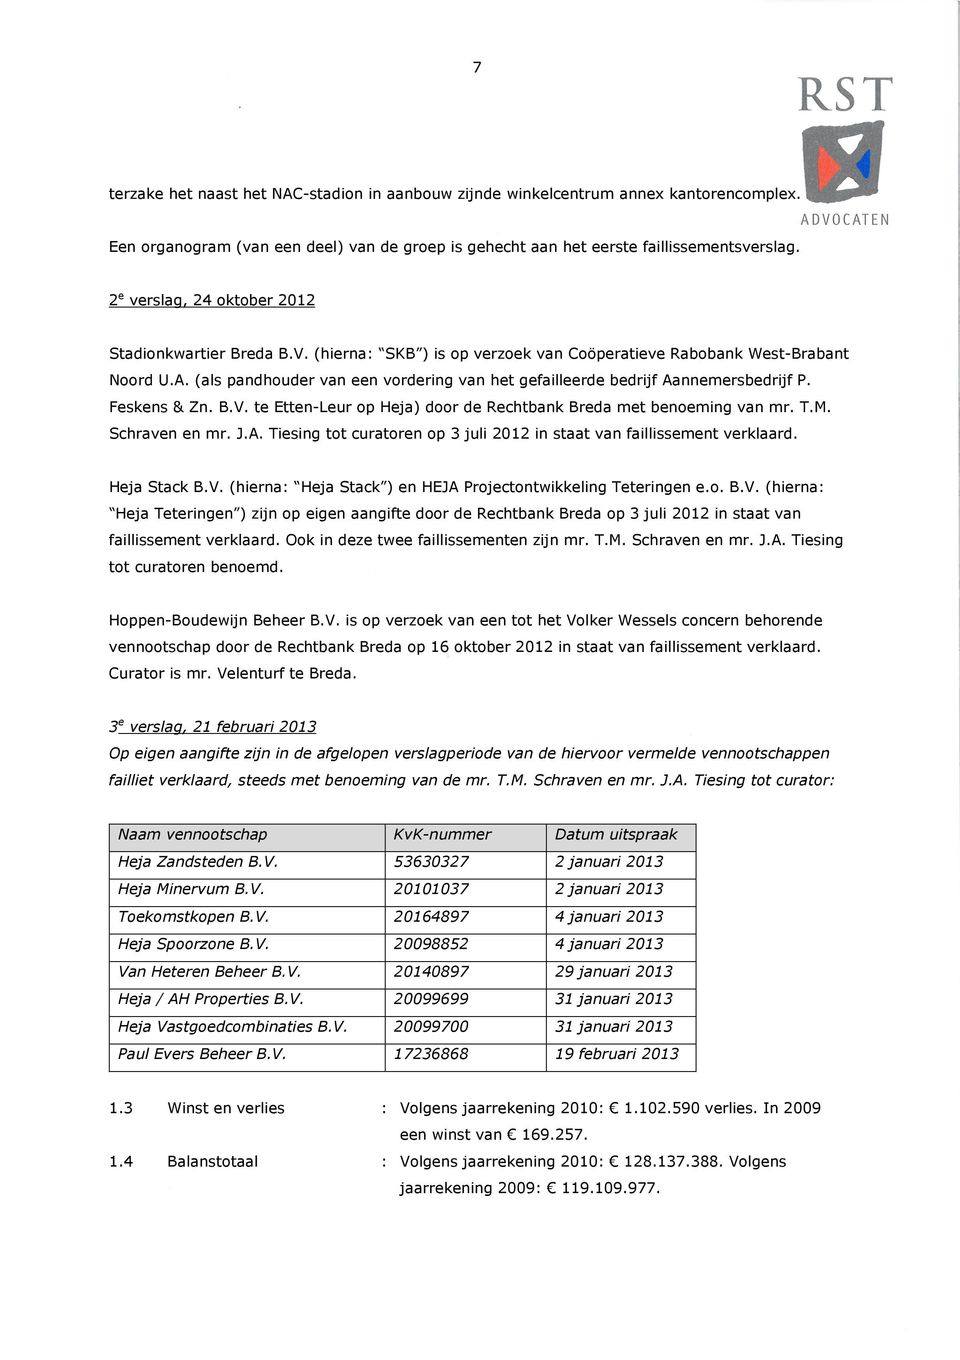 (als pandhouder van een vordering van het gefailleerde bedrijf Aannemersbedrijf P. Feskens & Zn. B.V. te Etten-Leur op Heja) door de Rechtbank Breda met benoeming van mr. T.M. Schraven en mr. J.A. Tiesing tot curatoren op 3 juli 2012 in staat van faillissement verklaard.